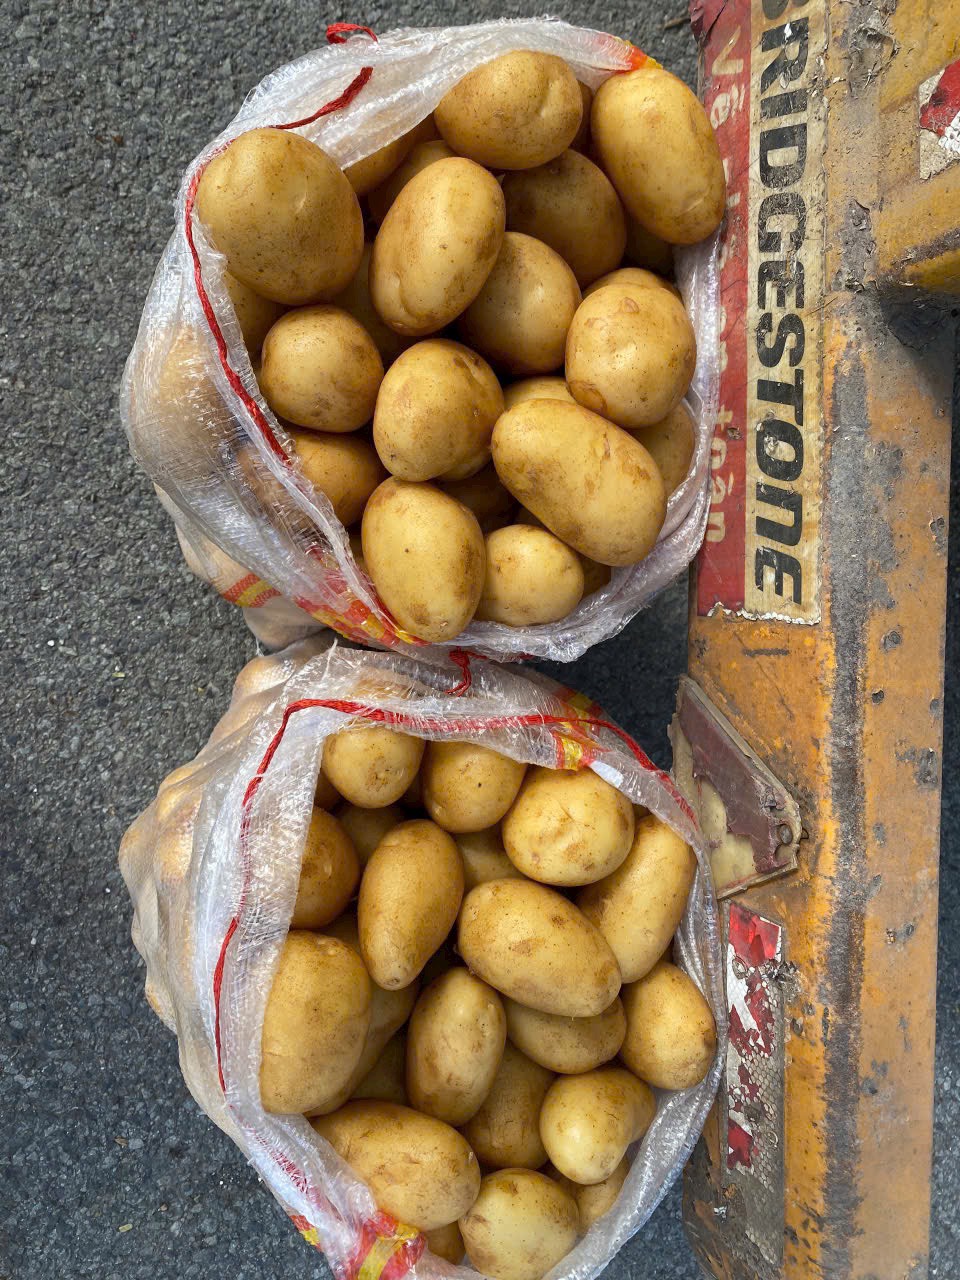 Cần tìm đơn vị vận tải vận chuyển hàng khoai tây đi Slovenia